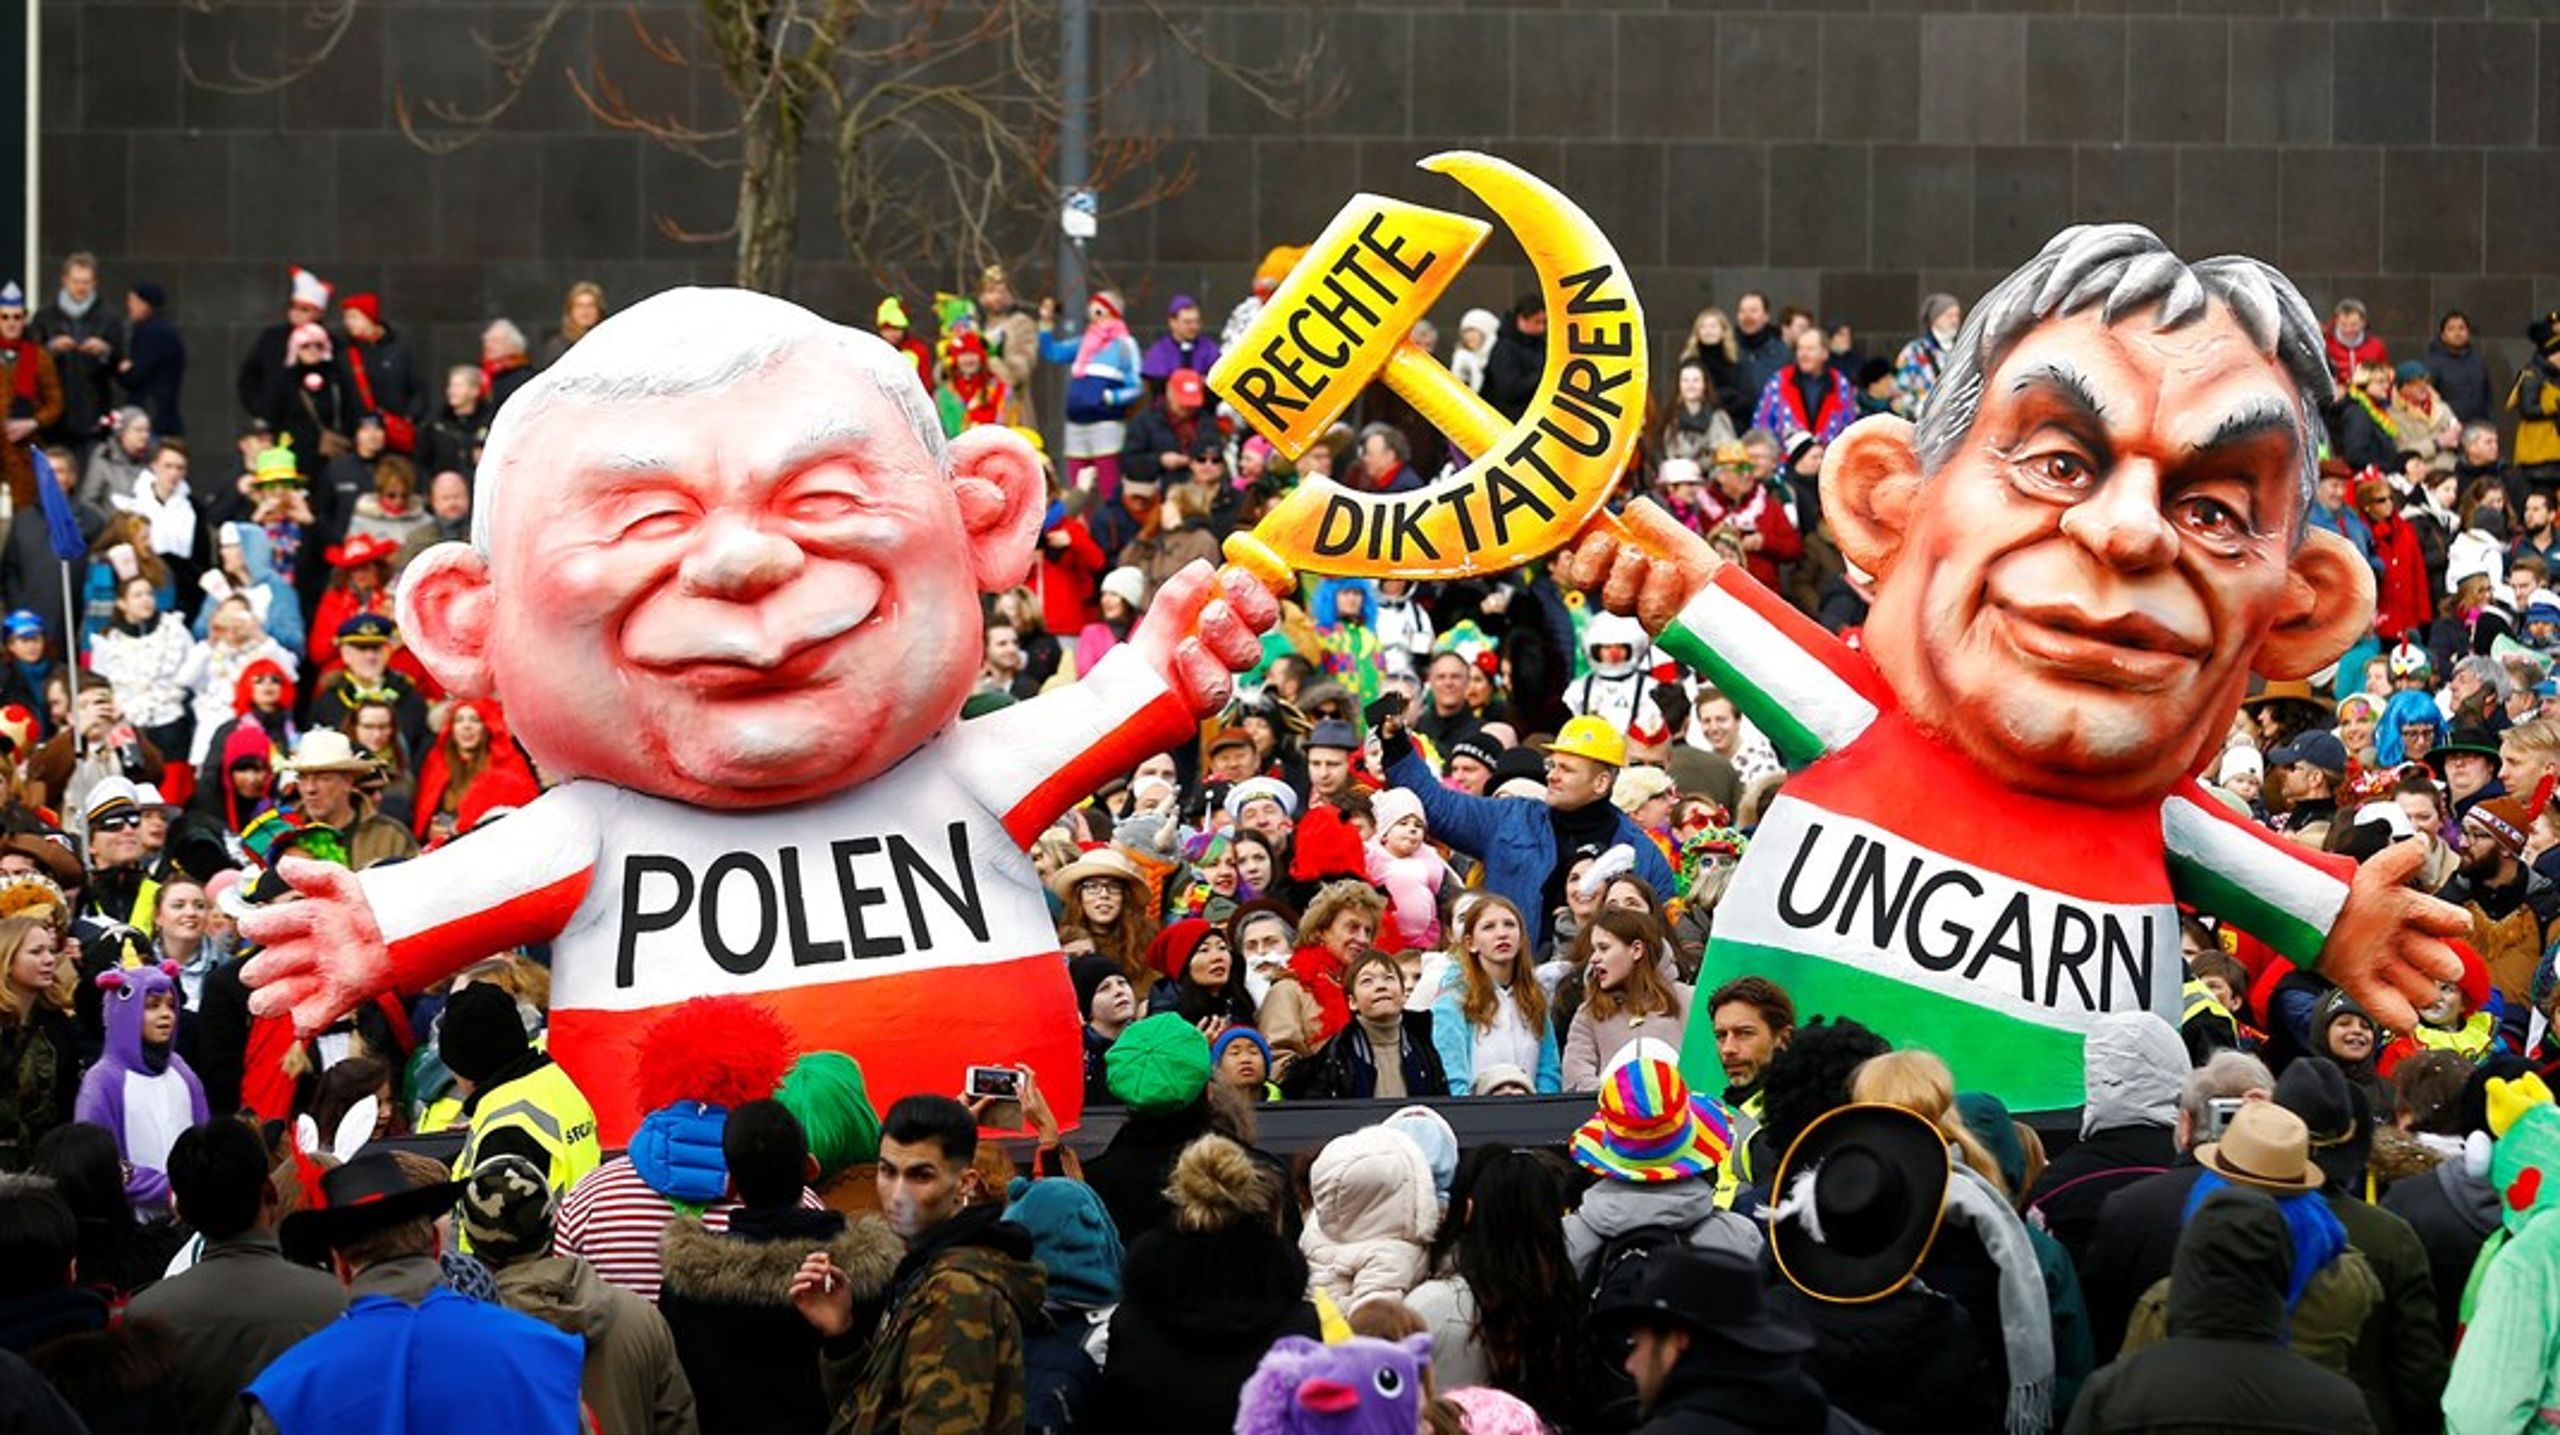 Ungarns Viktor Orbán og Polens Jaroslaw Kaczynski giver sig ikke i kampen om, hvad "demokrati" skal betyde. Gør EU, spørger Europa-analytiker Vibe Termansen.